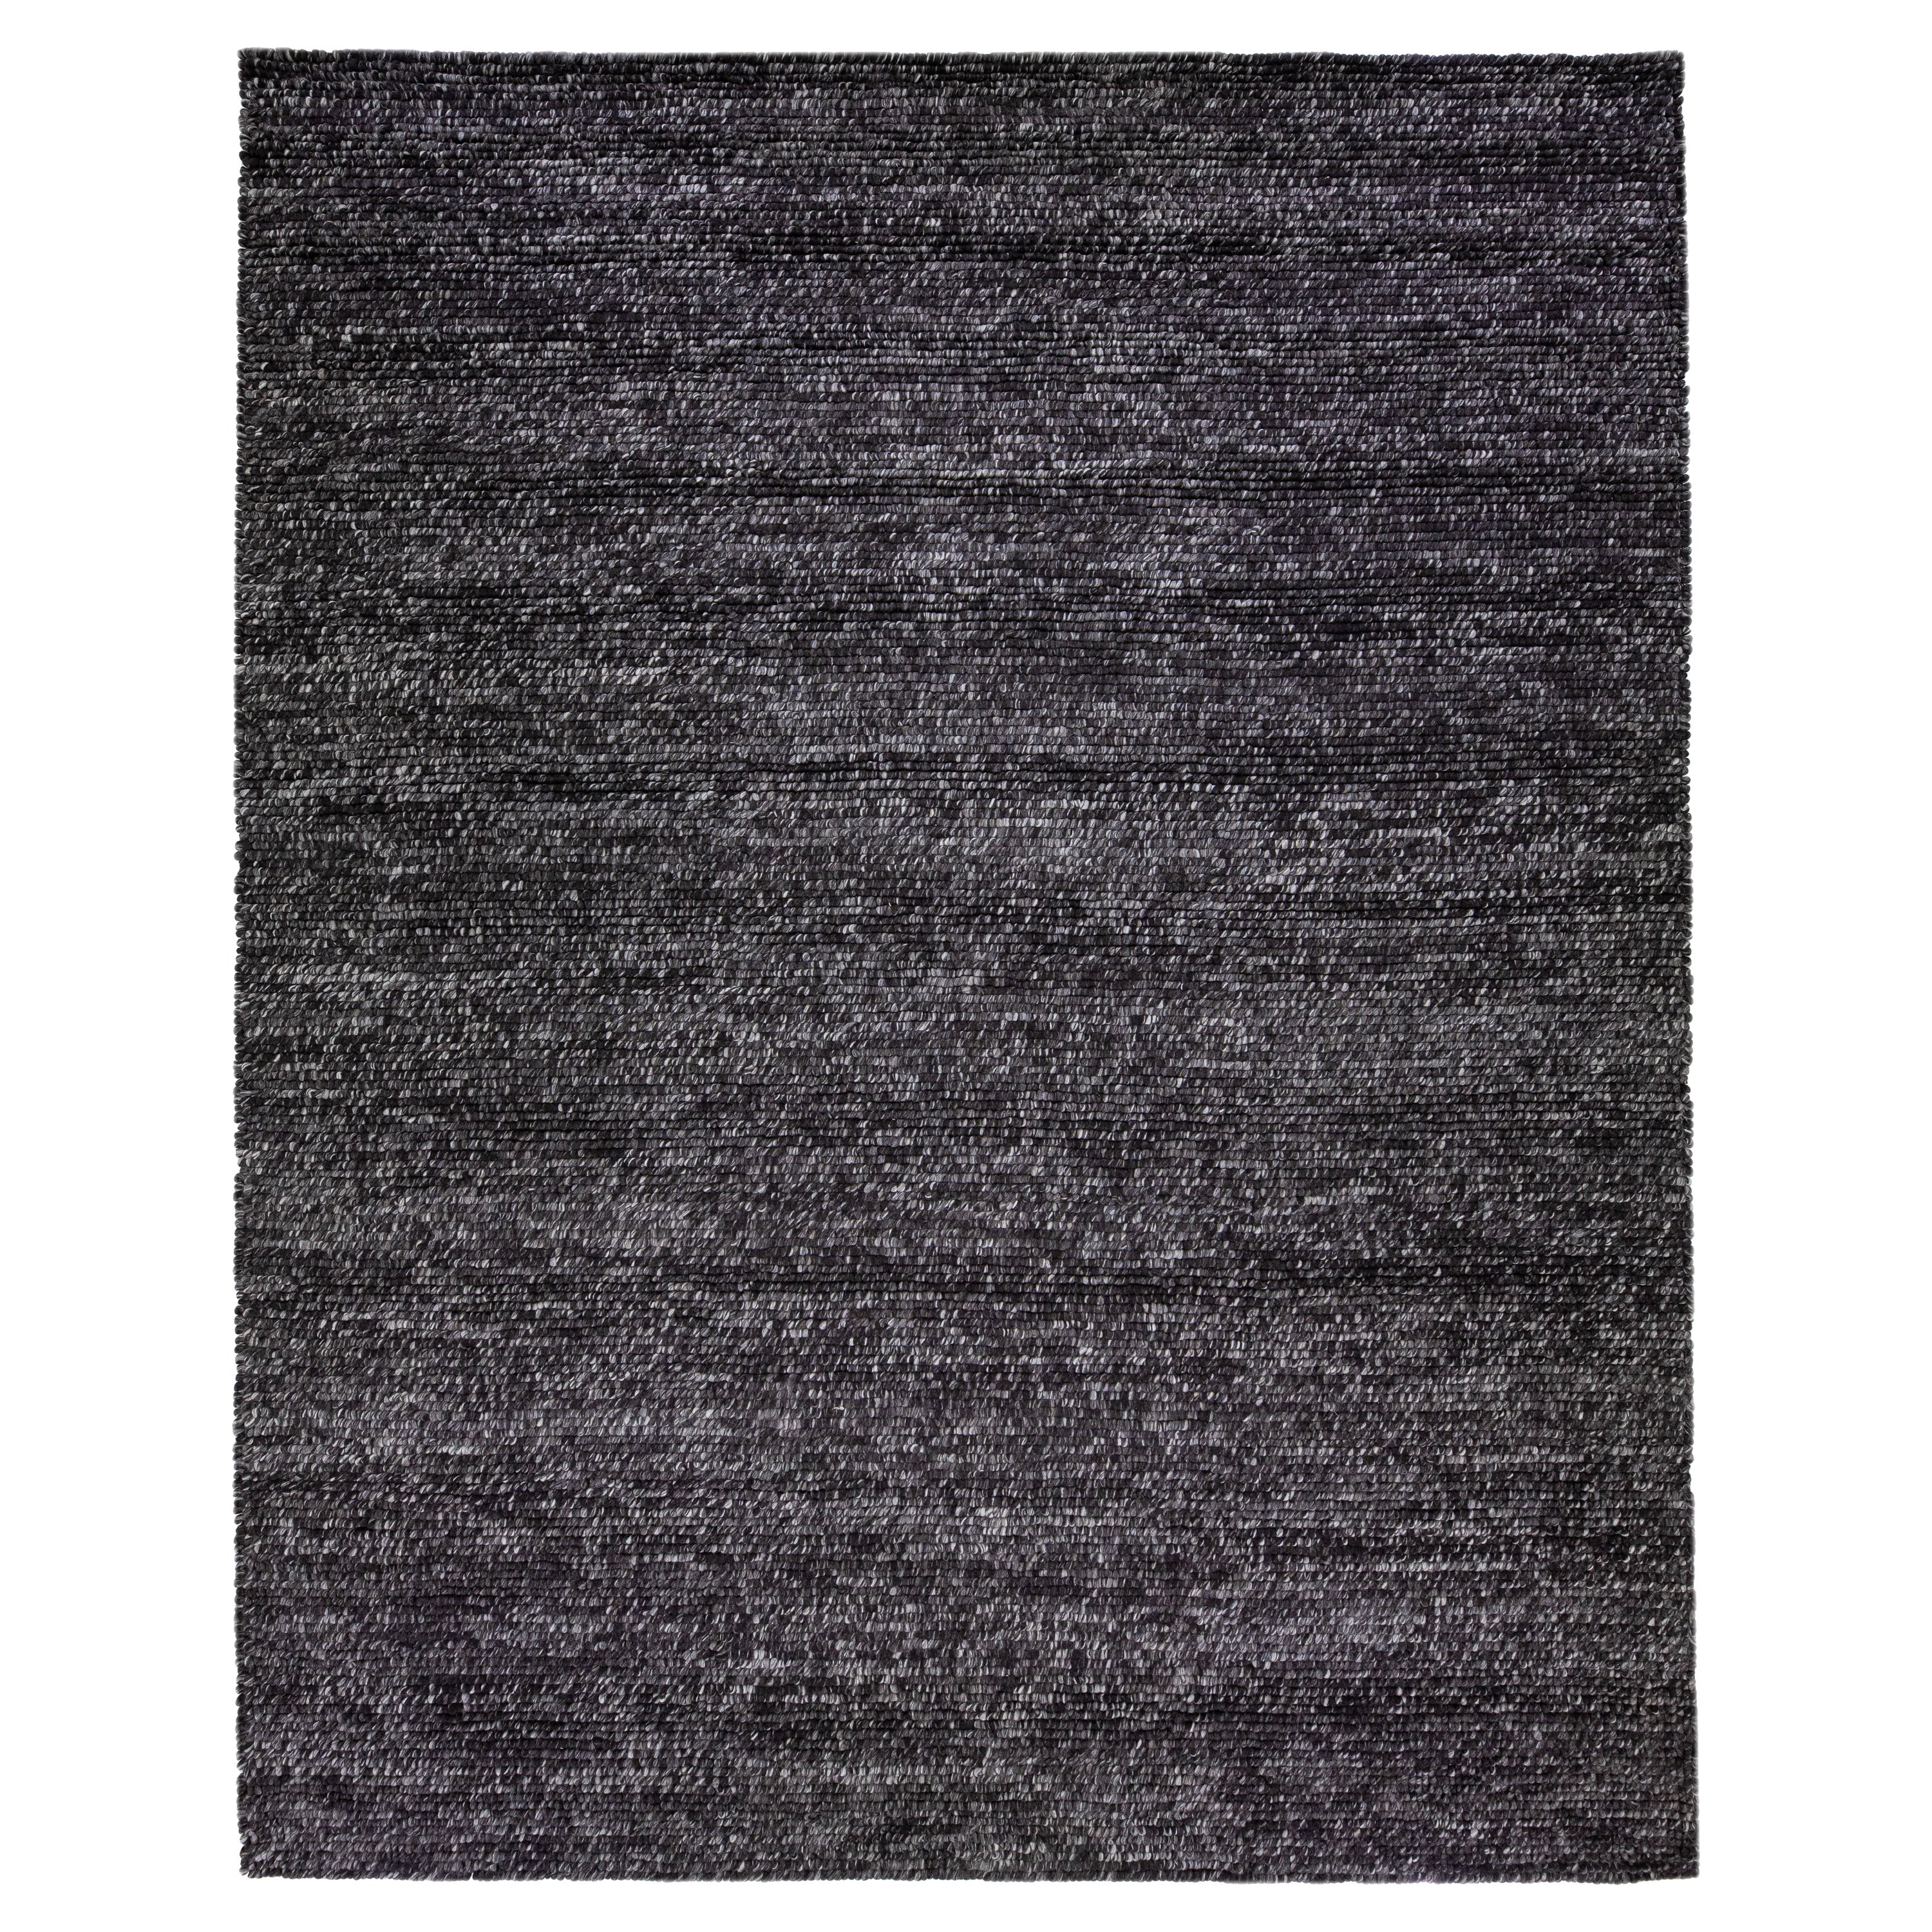 Moderner grau-Charcoalfarbener Filz-Teppich aus strukturierter Wolle von Apadana